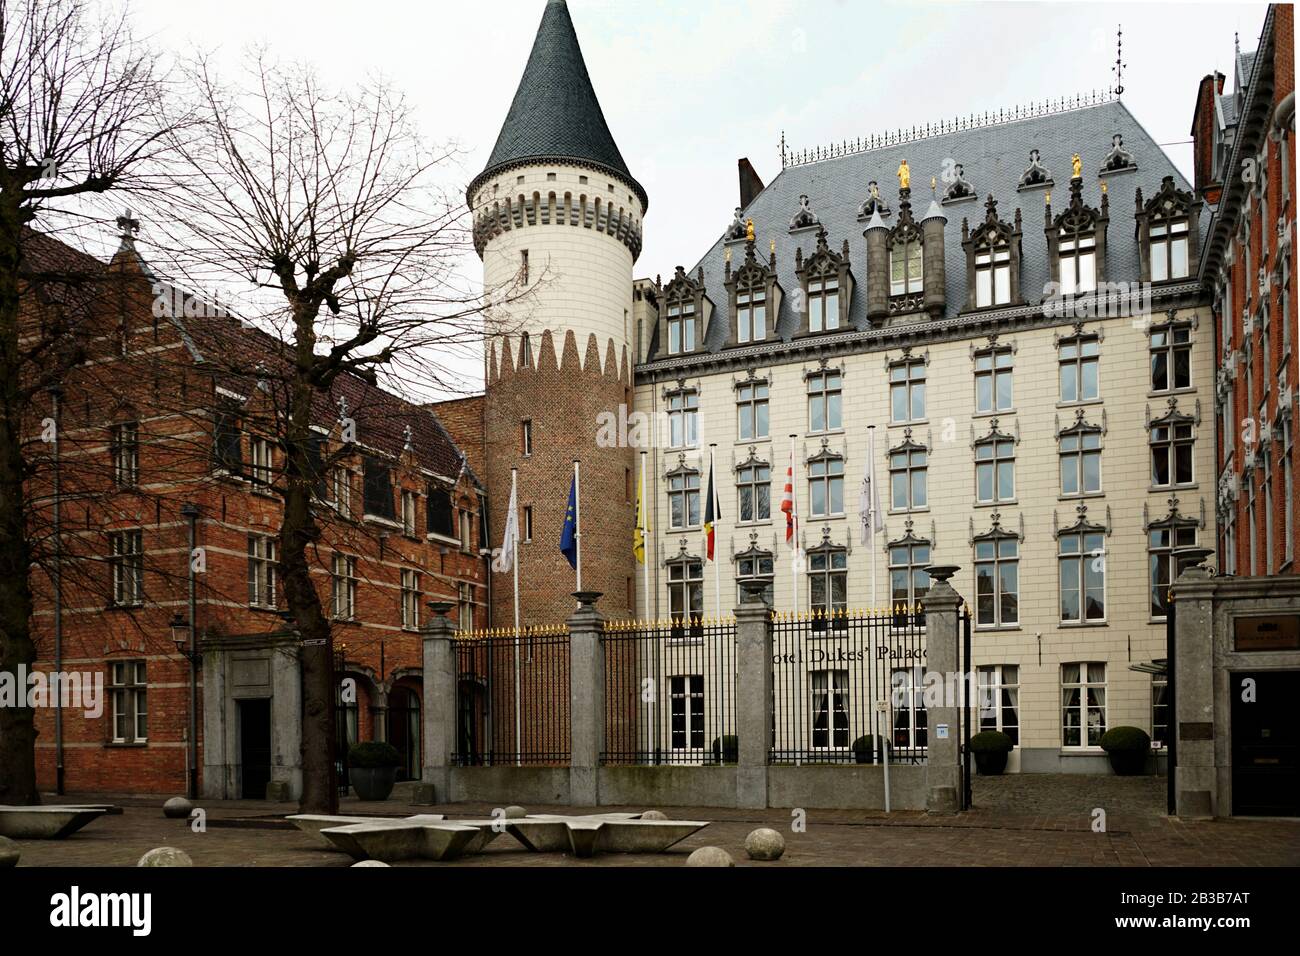 Brugge Belgium, Dukes Palace Hotel Stock Photo - Alamy